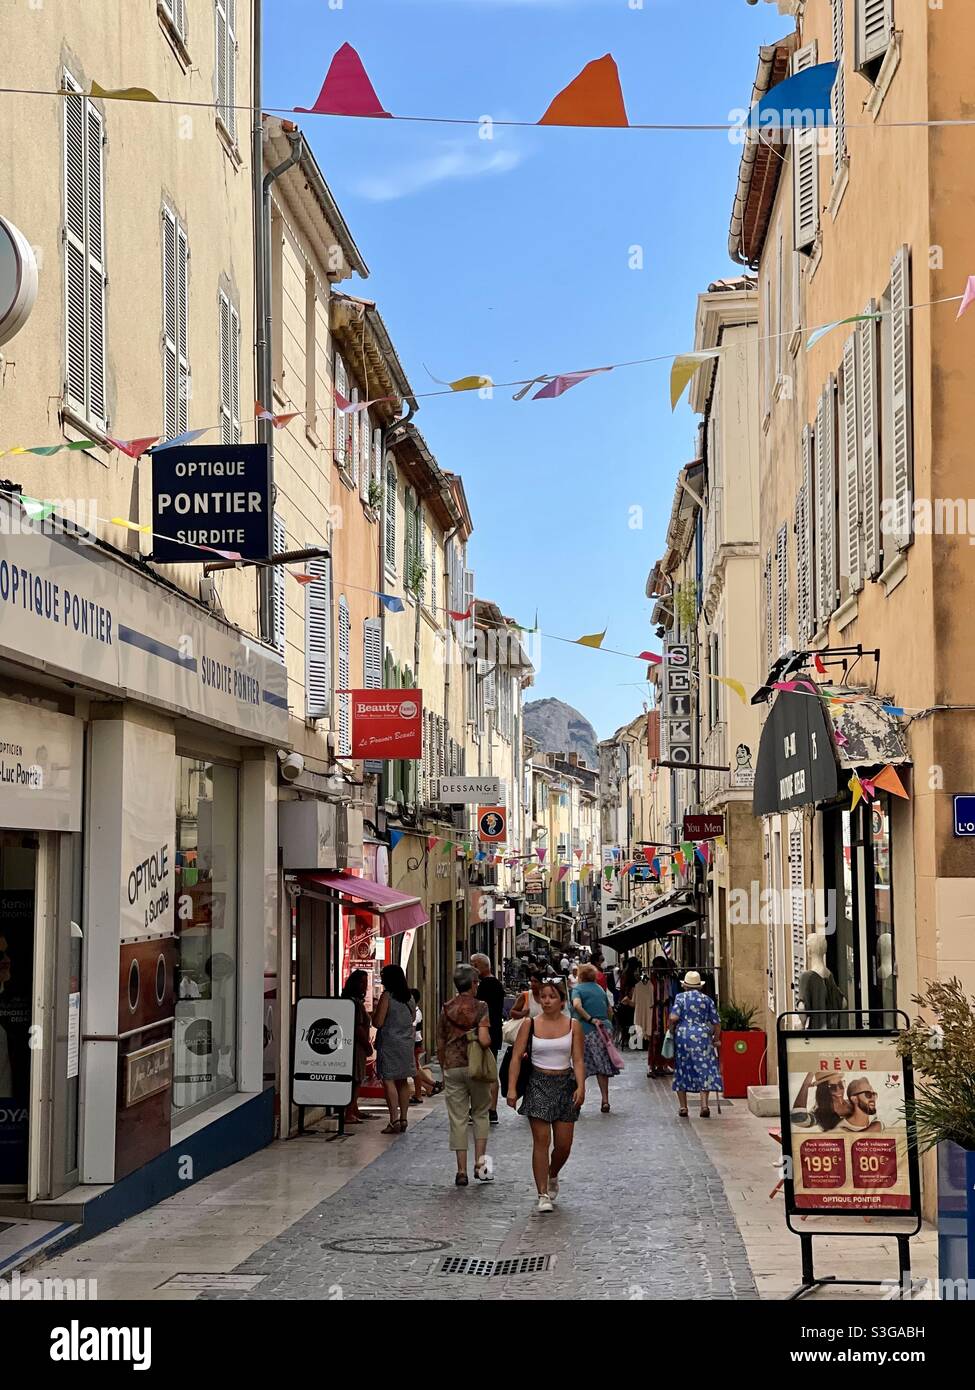 Touristes marchant dans la principale rue commerçante du centre-ville de la Ciotat, près de Marseille, Bouches-du-Rhône, Provence-Alpes-Côte d'Azur, au sud de la France Banque D'Images